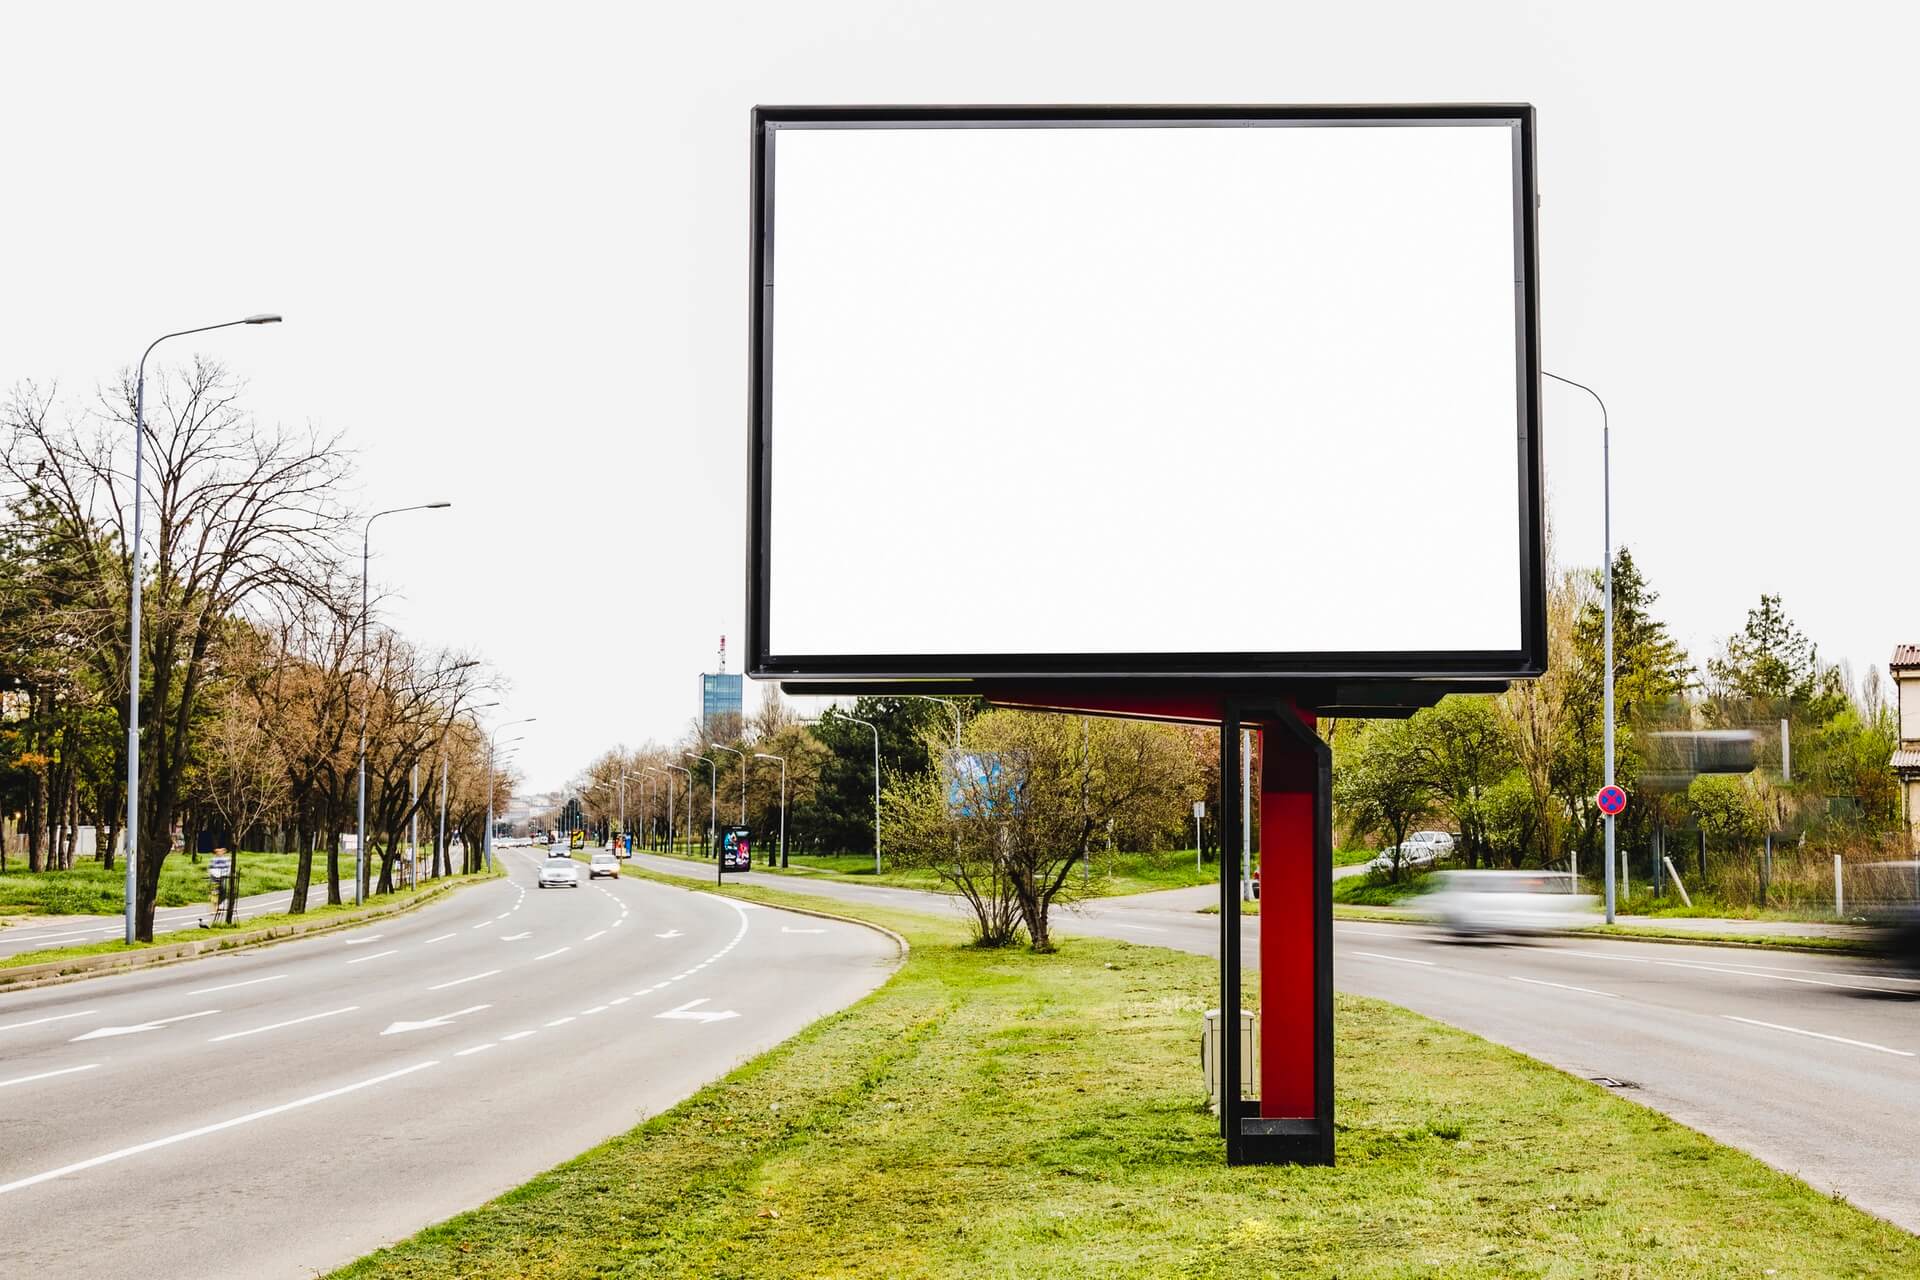 Street Canvases : Comment les panneaux d’affichage LED deviennent-ils un moyen d’expression créative urbaine ?